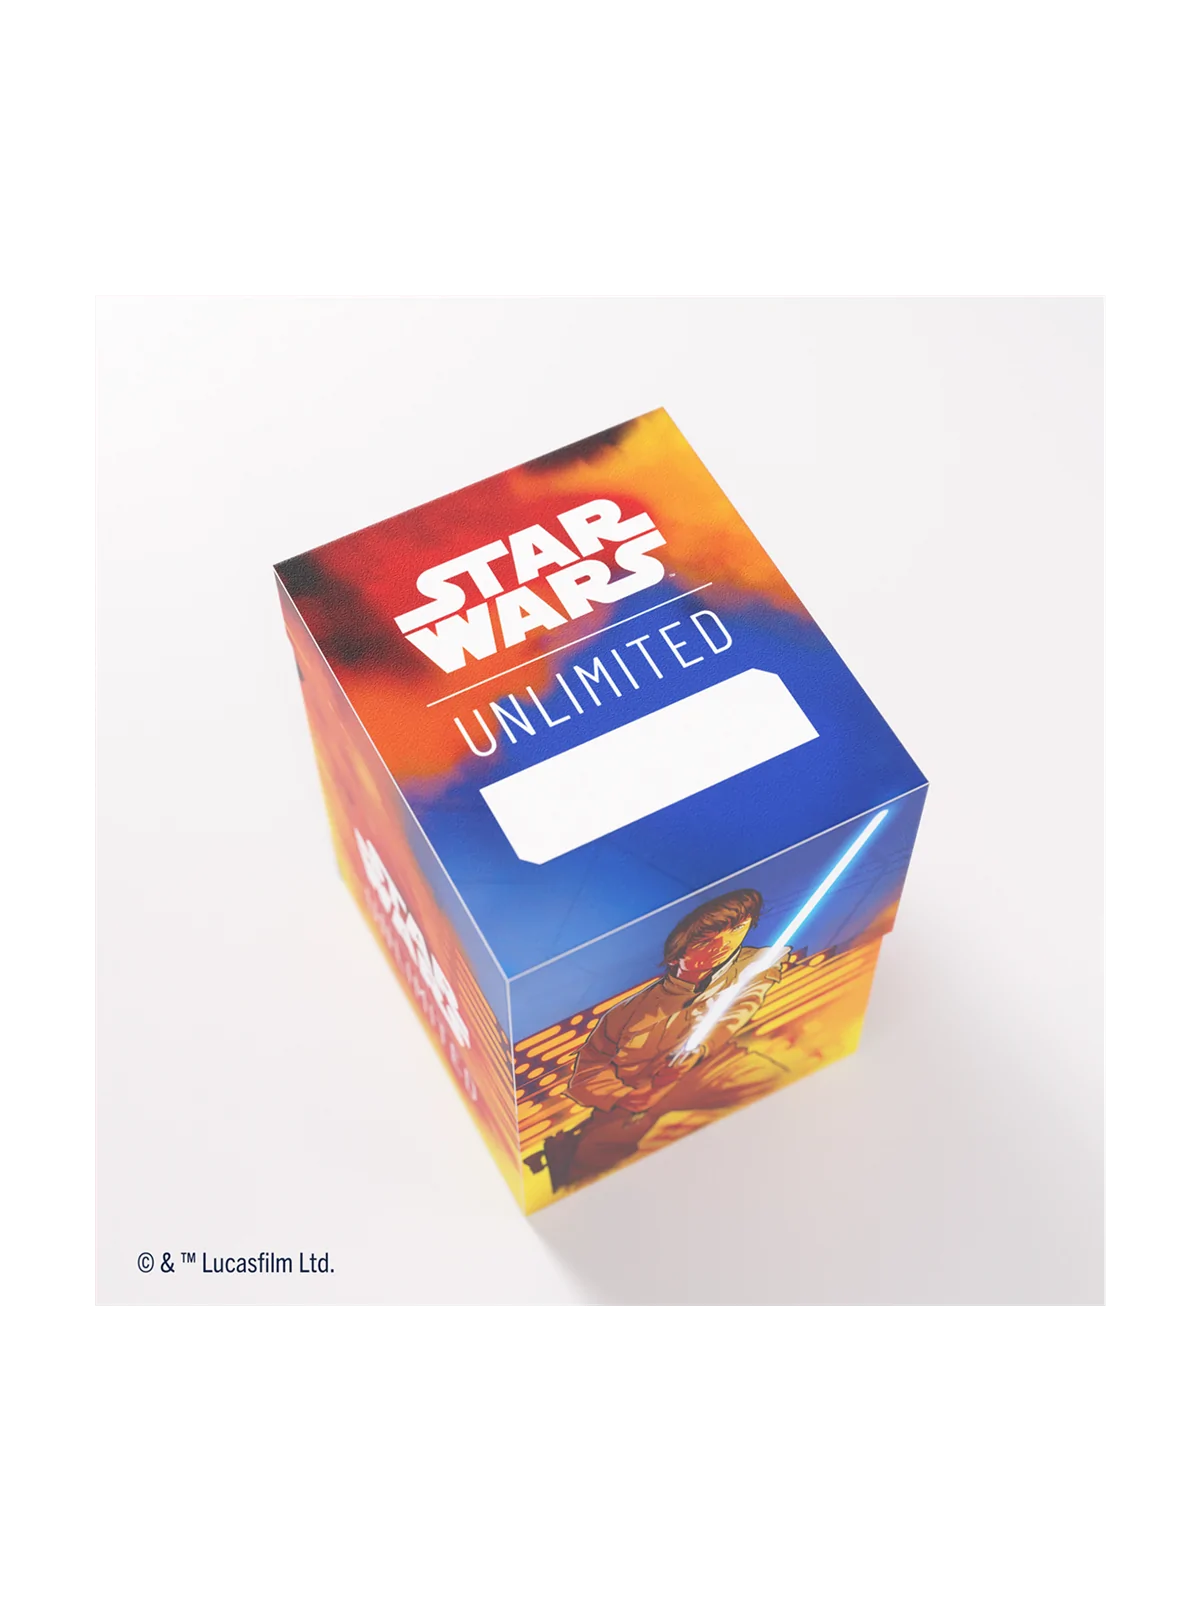 Comprar Star Wars Unlimited: Soft Crate Luke/Vader barato al mejor pre